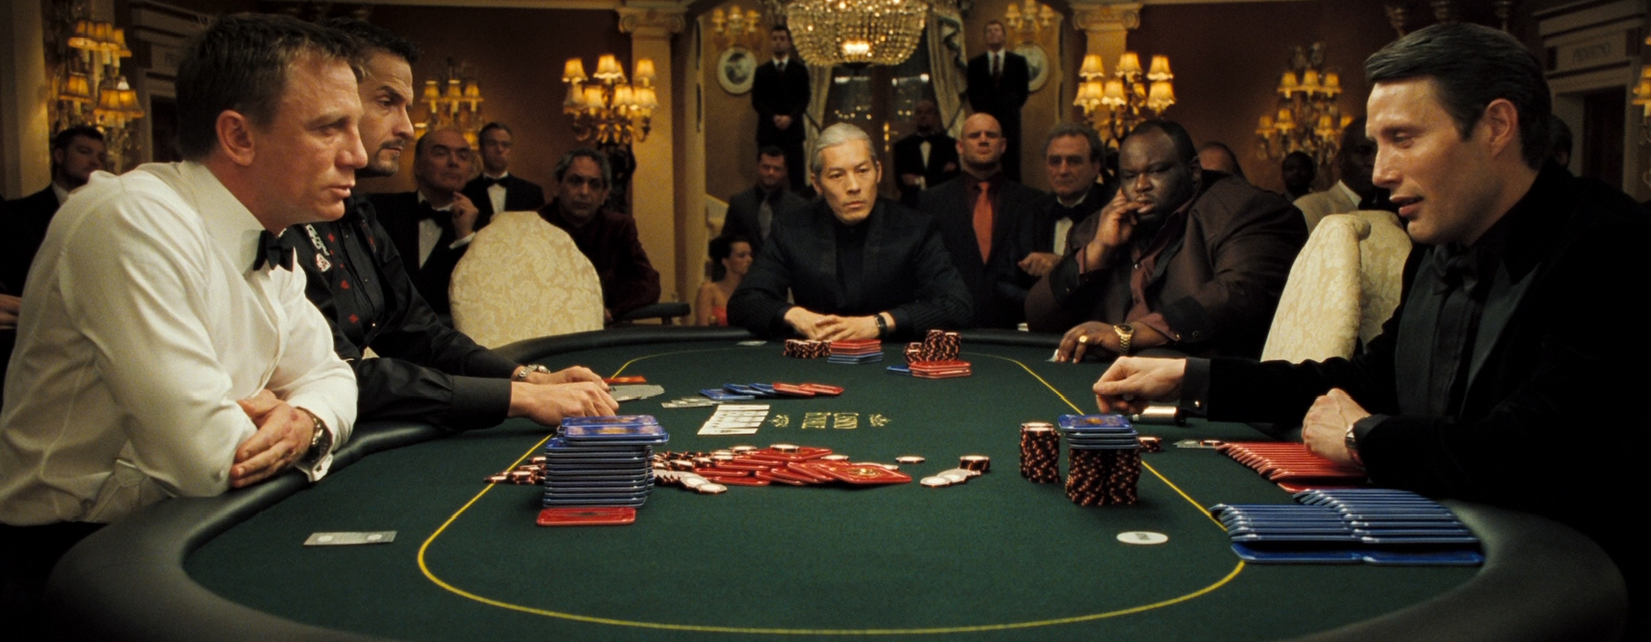 Film Poker